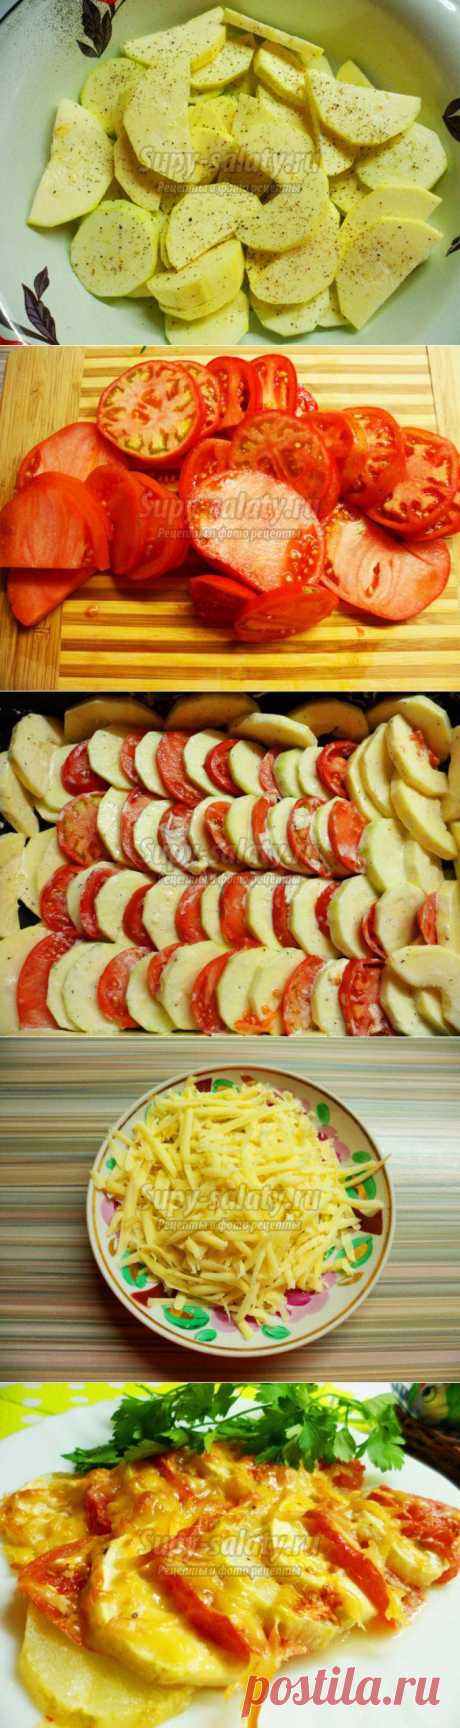 Запеканка из кабачков с помидорами под сырной корочкой